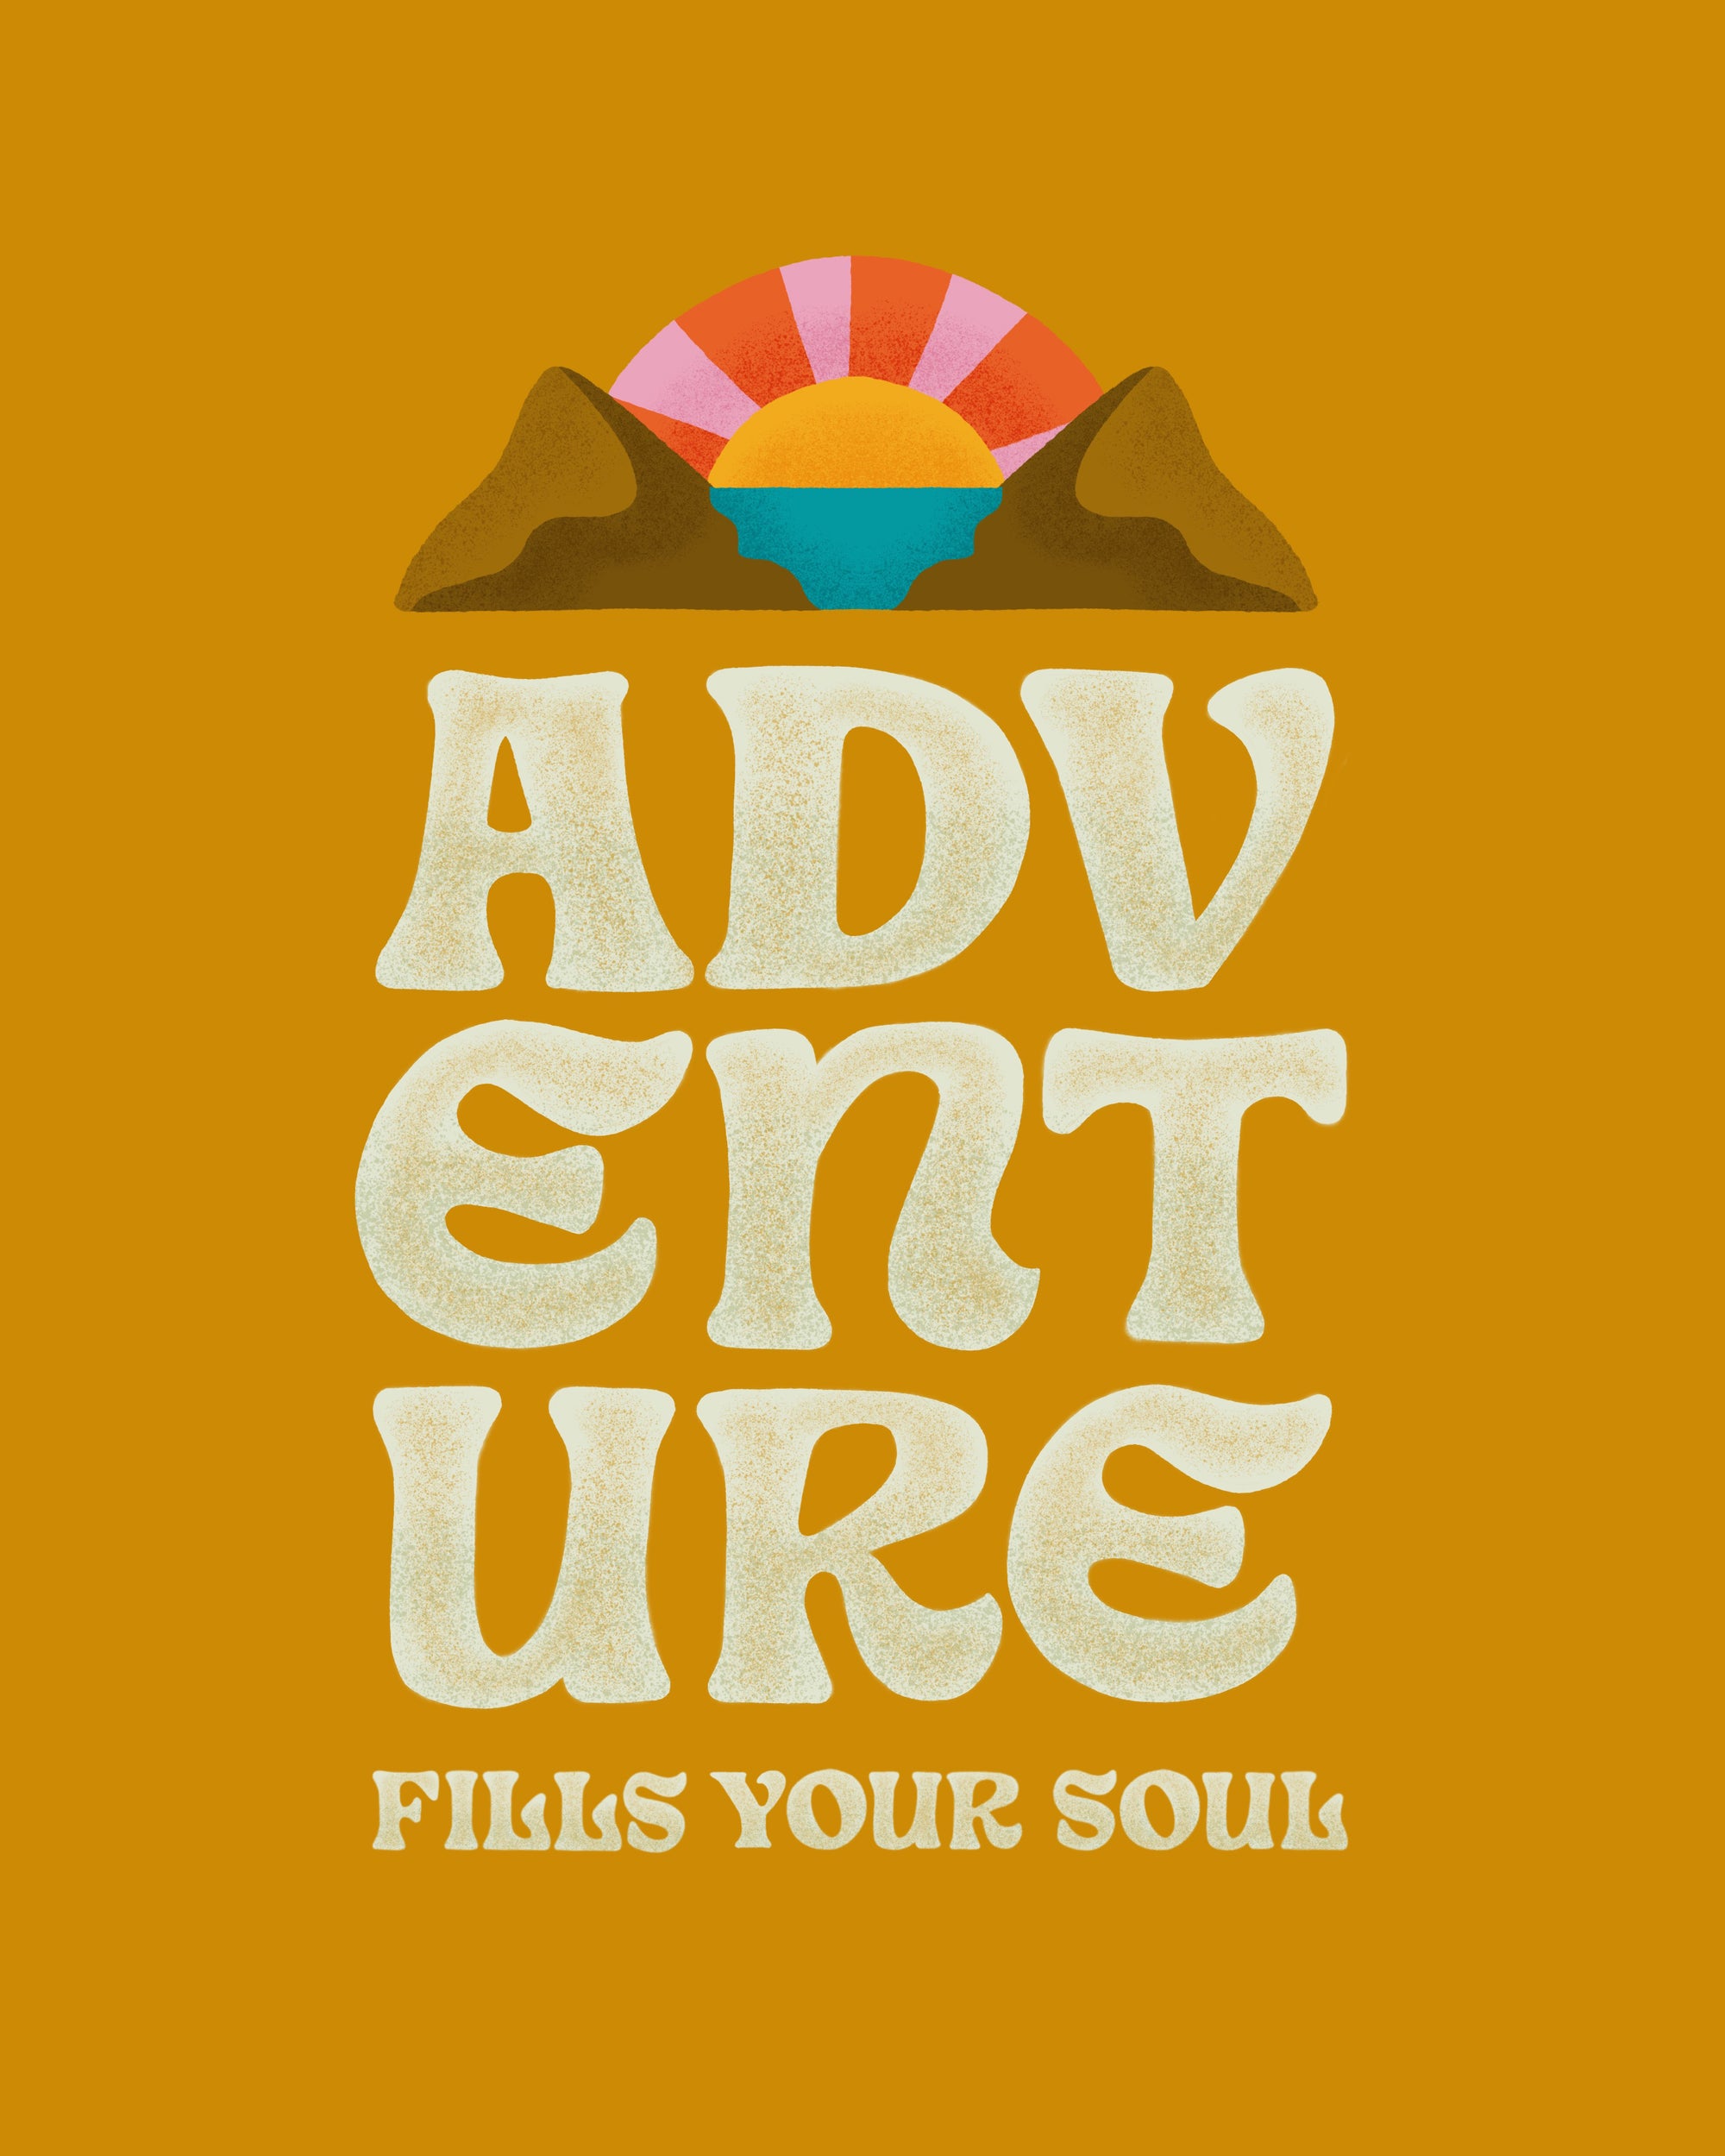 La aventura llena tu alma impresa